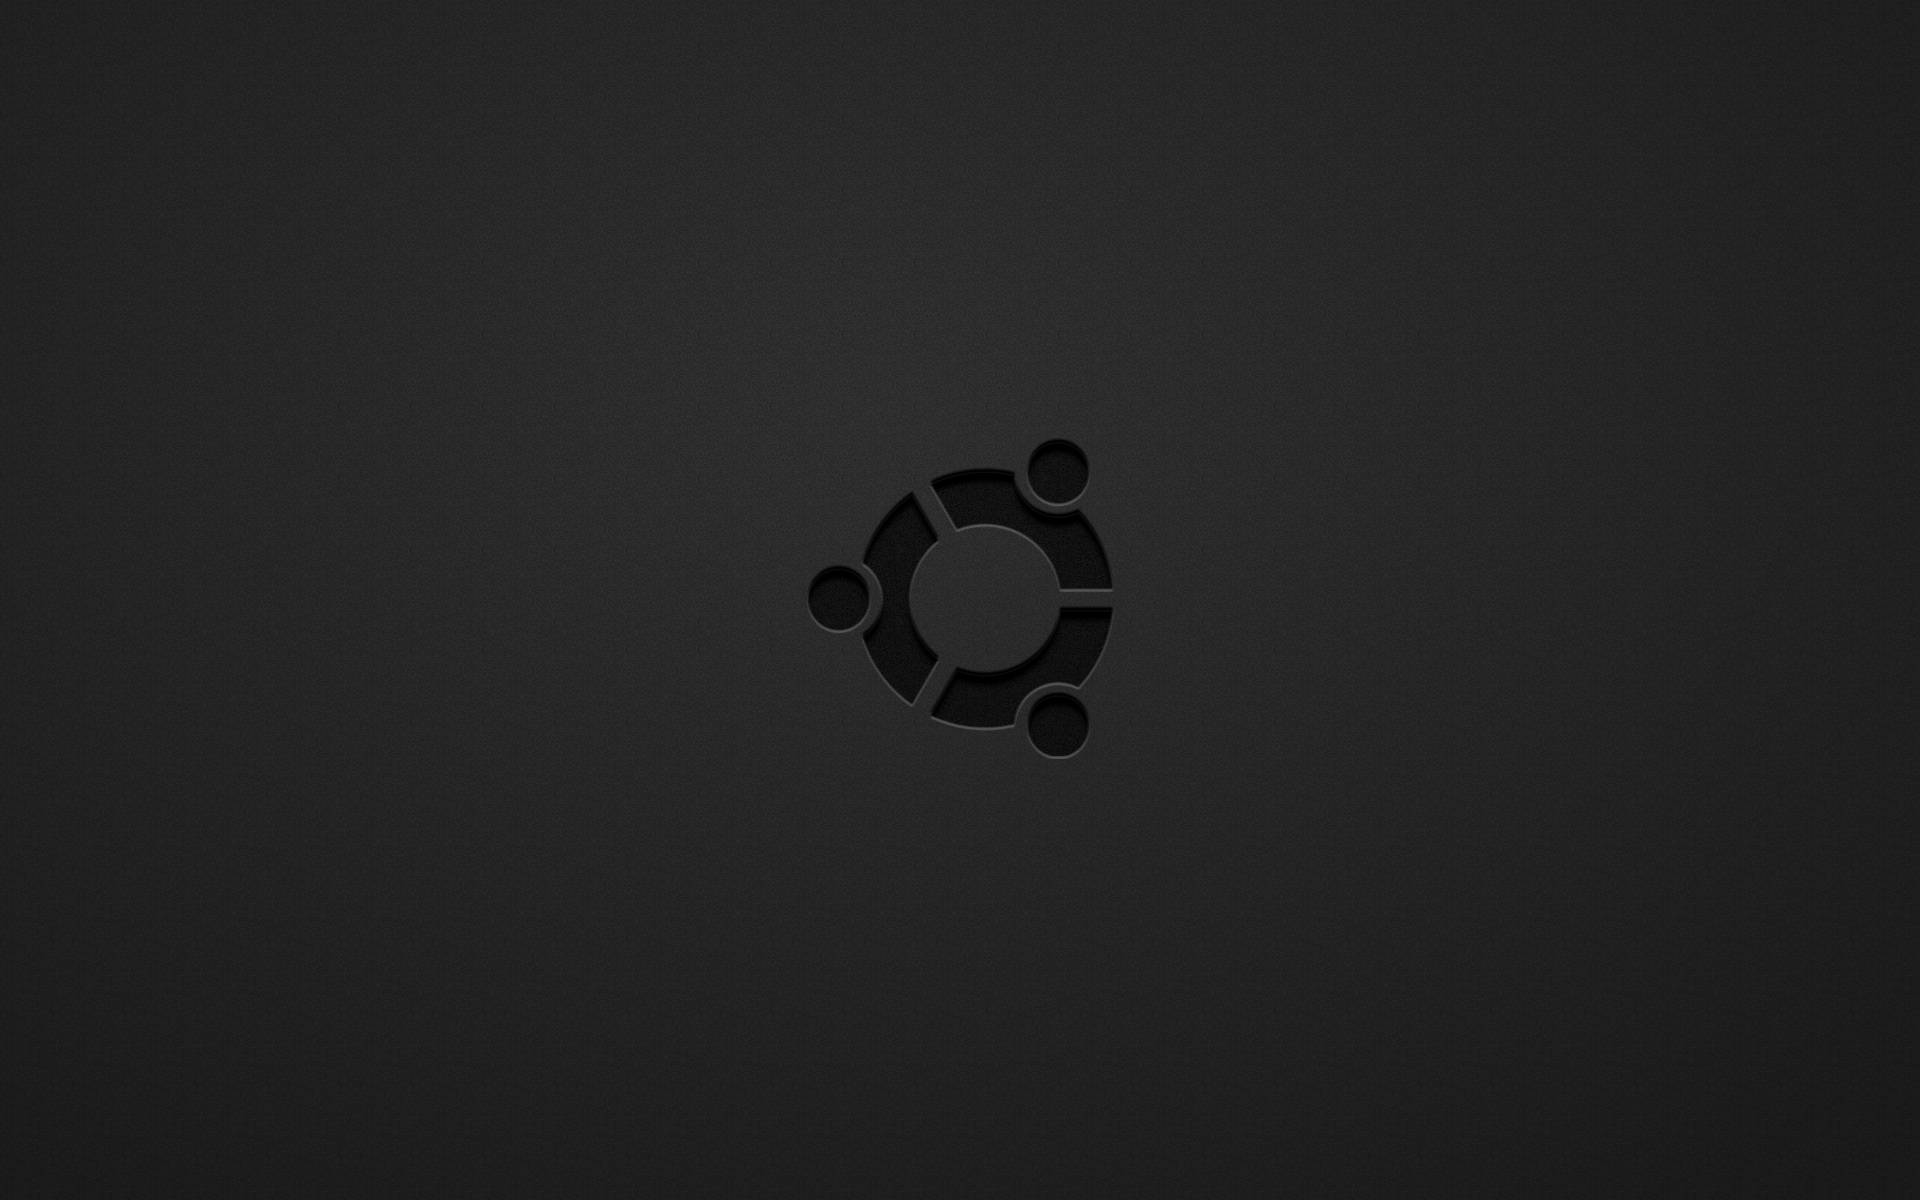 Dark Ubuntu Logo Minimalist